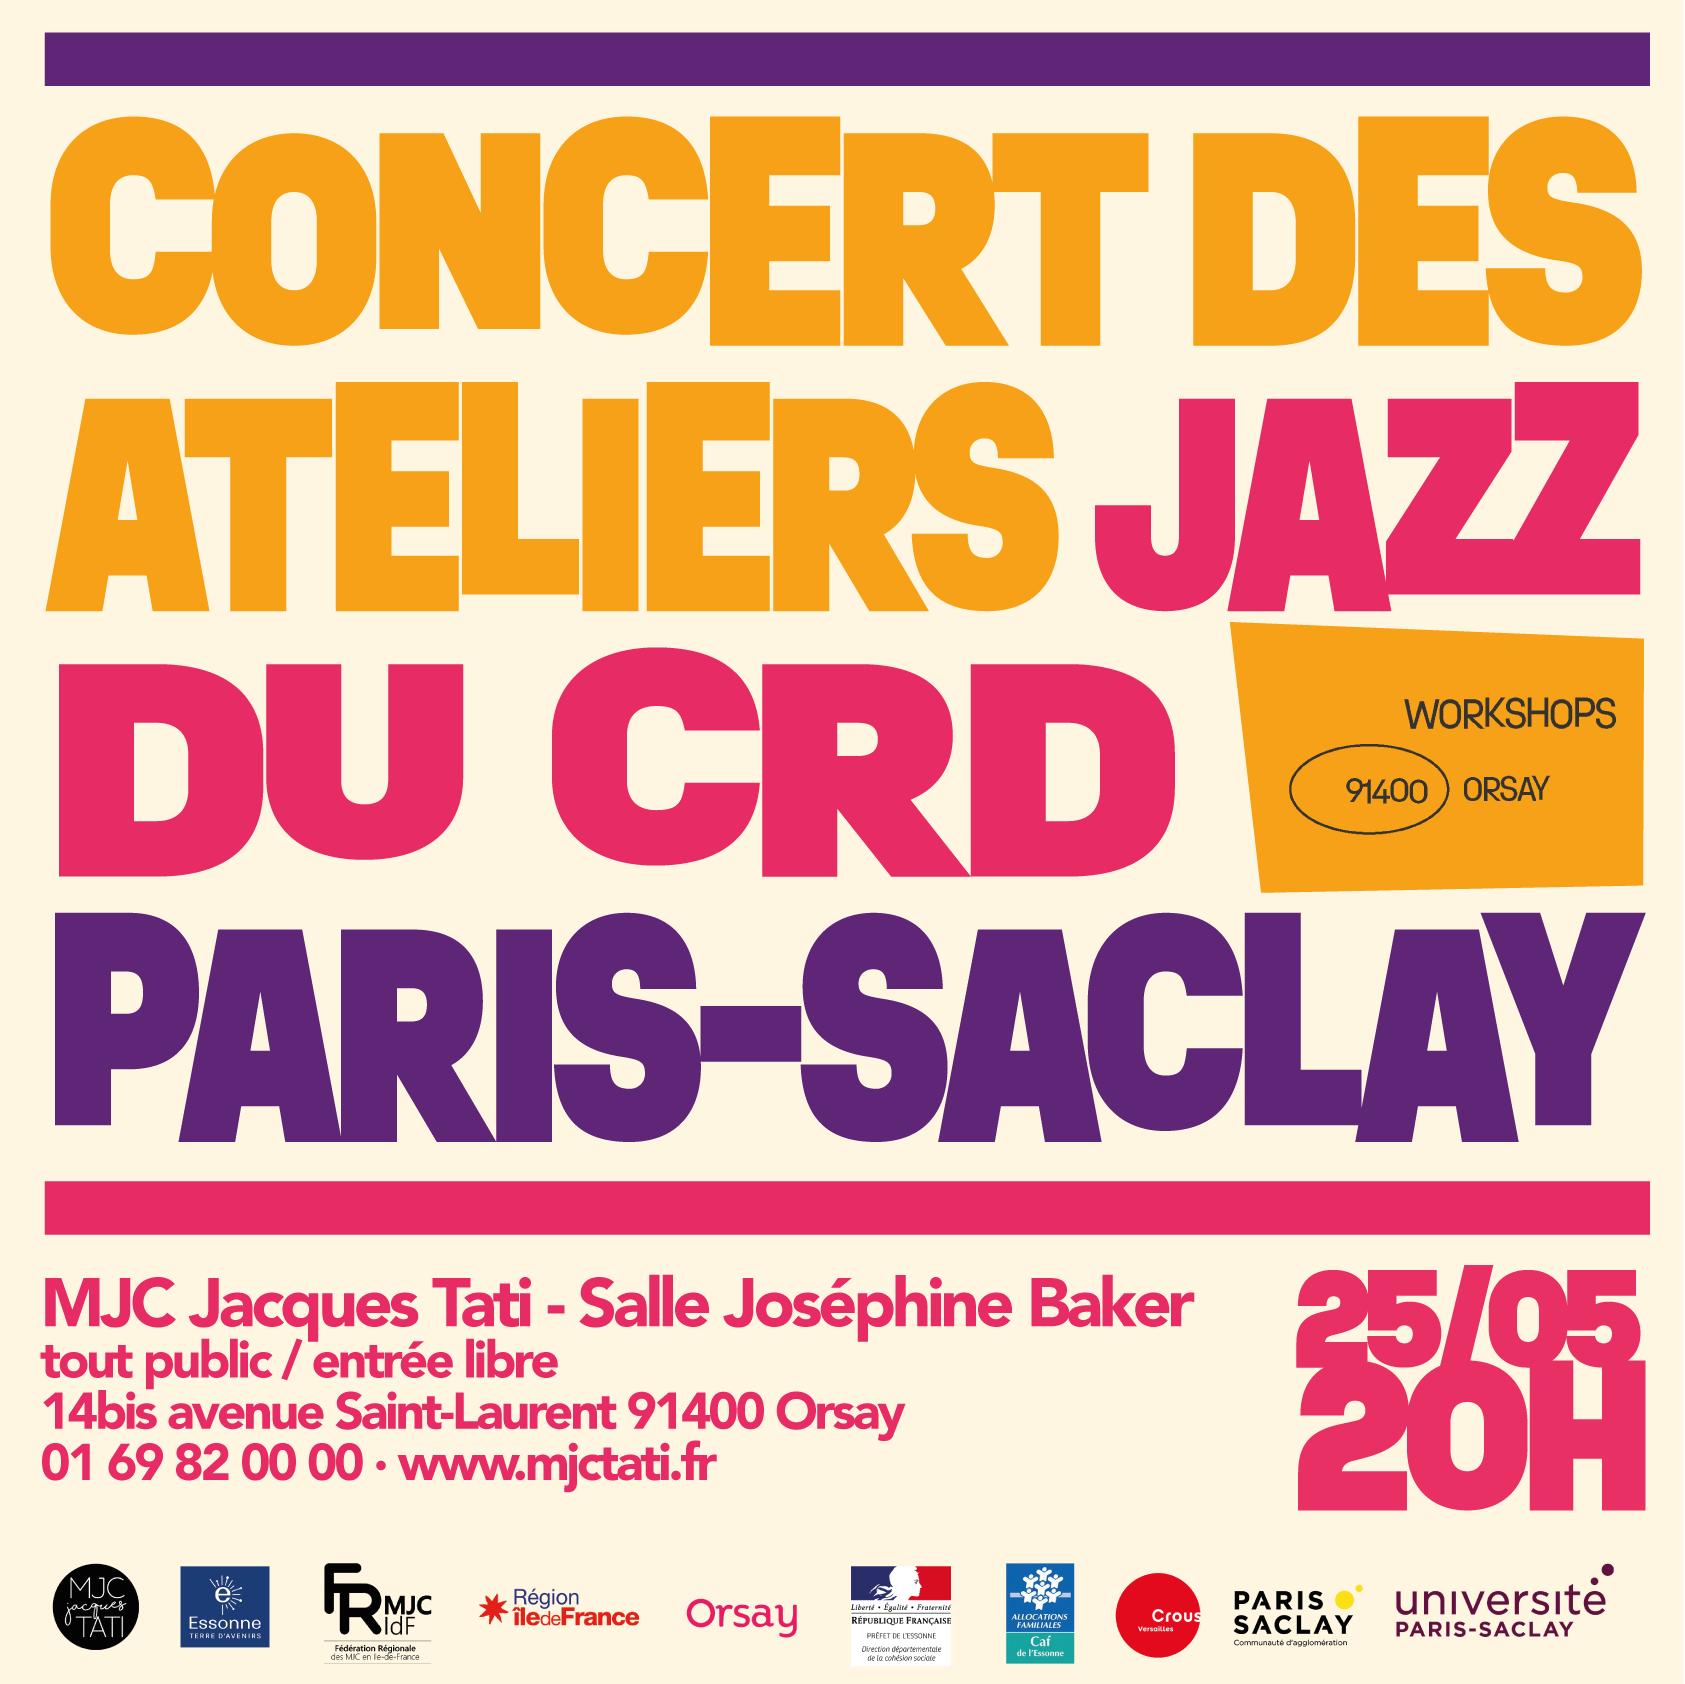 Concert des ateliers jazz du CRD Paris-Saclay à la MJC Jacques Tati